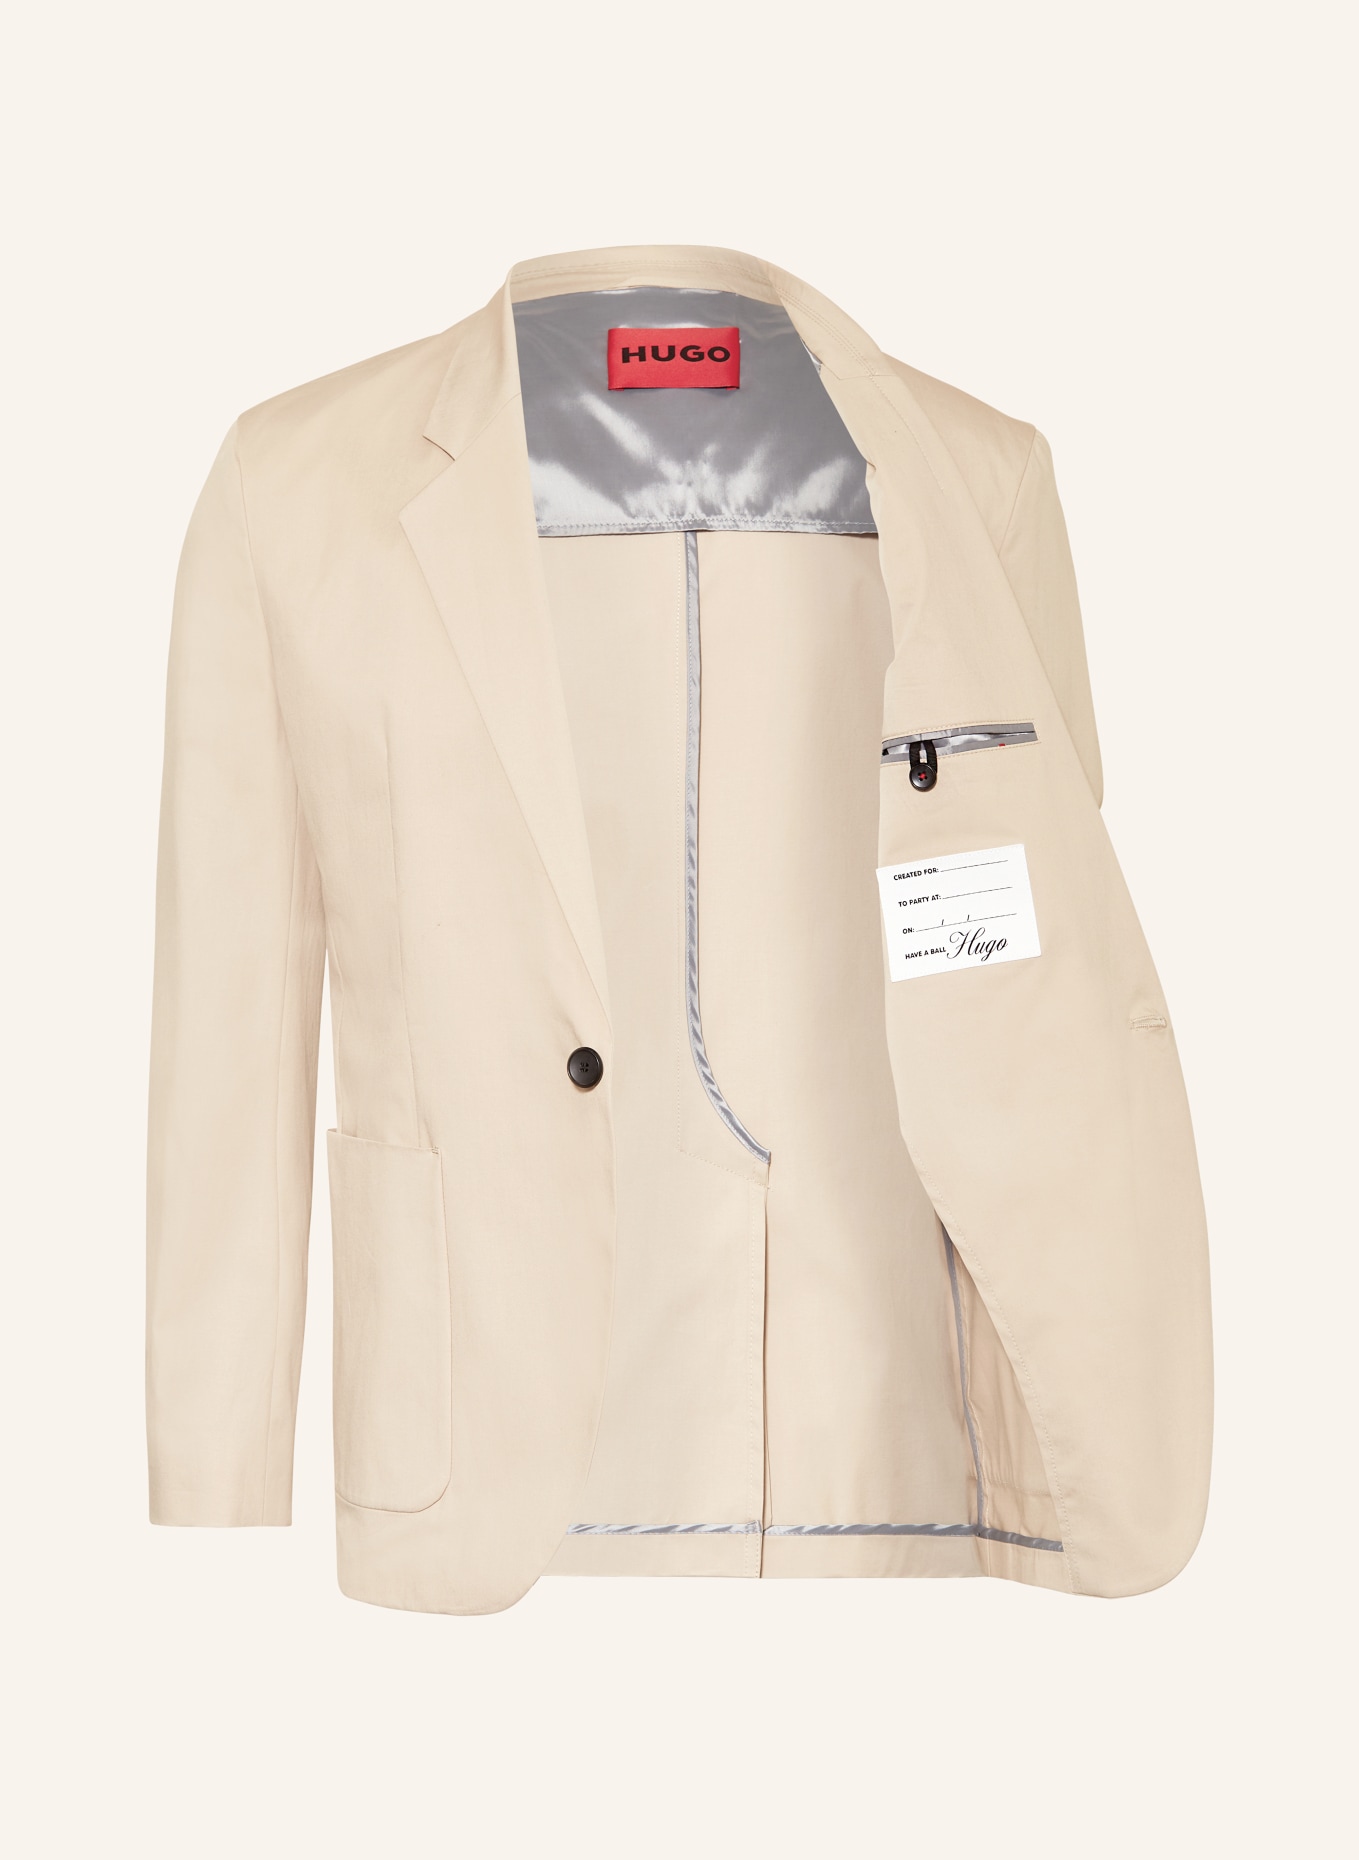 HUGO Suit jacket KEYFRED regular fit, Color: 267 MEDIUM BEIGE (Image 4)